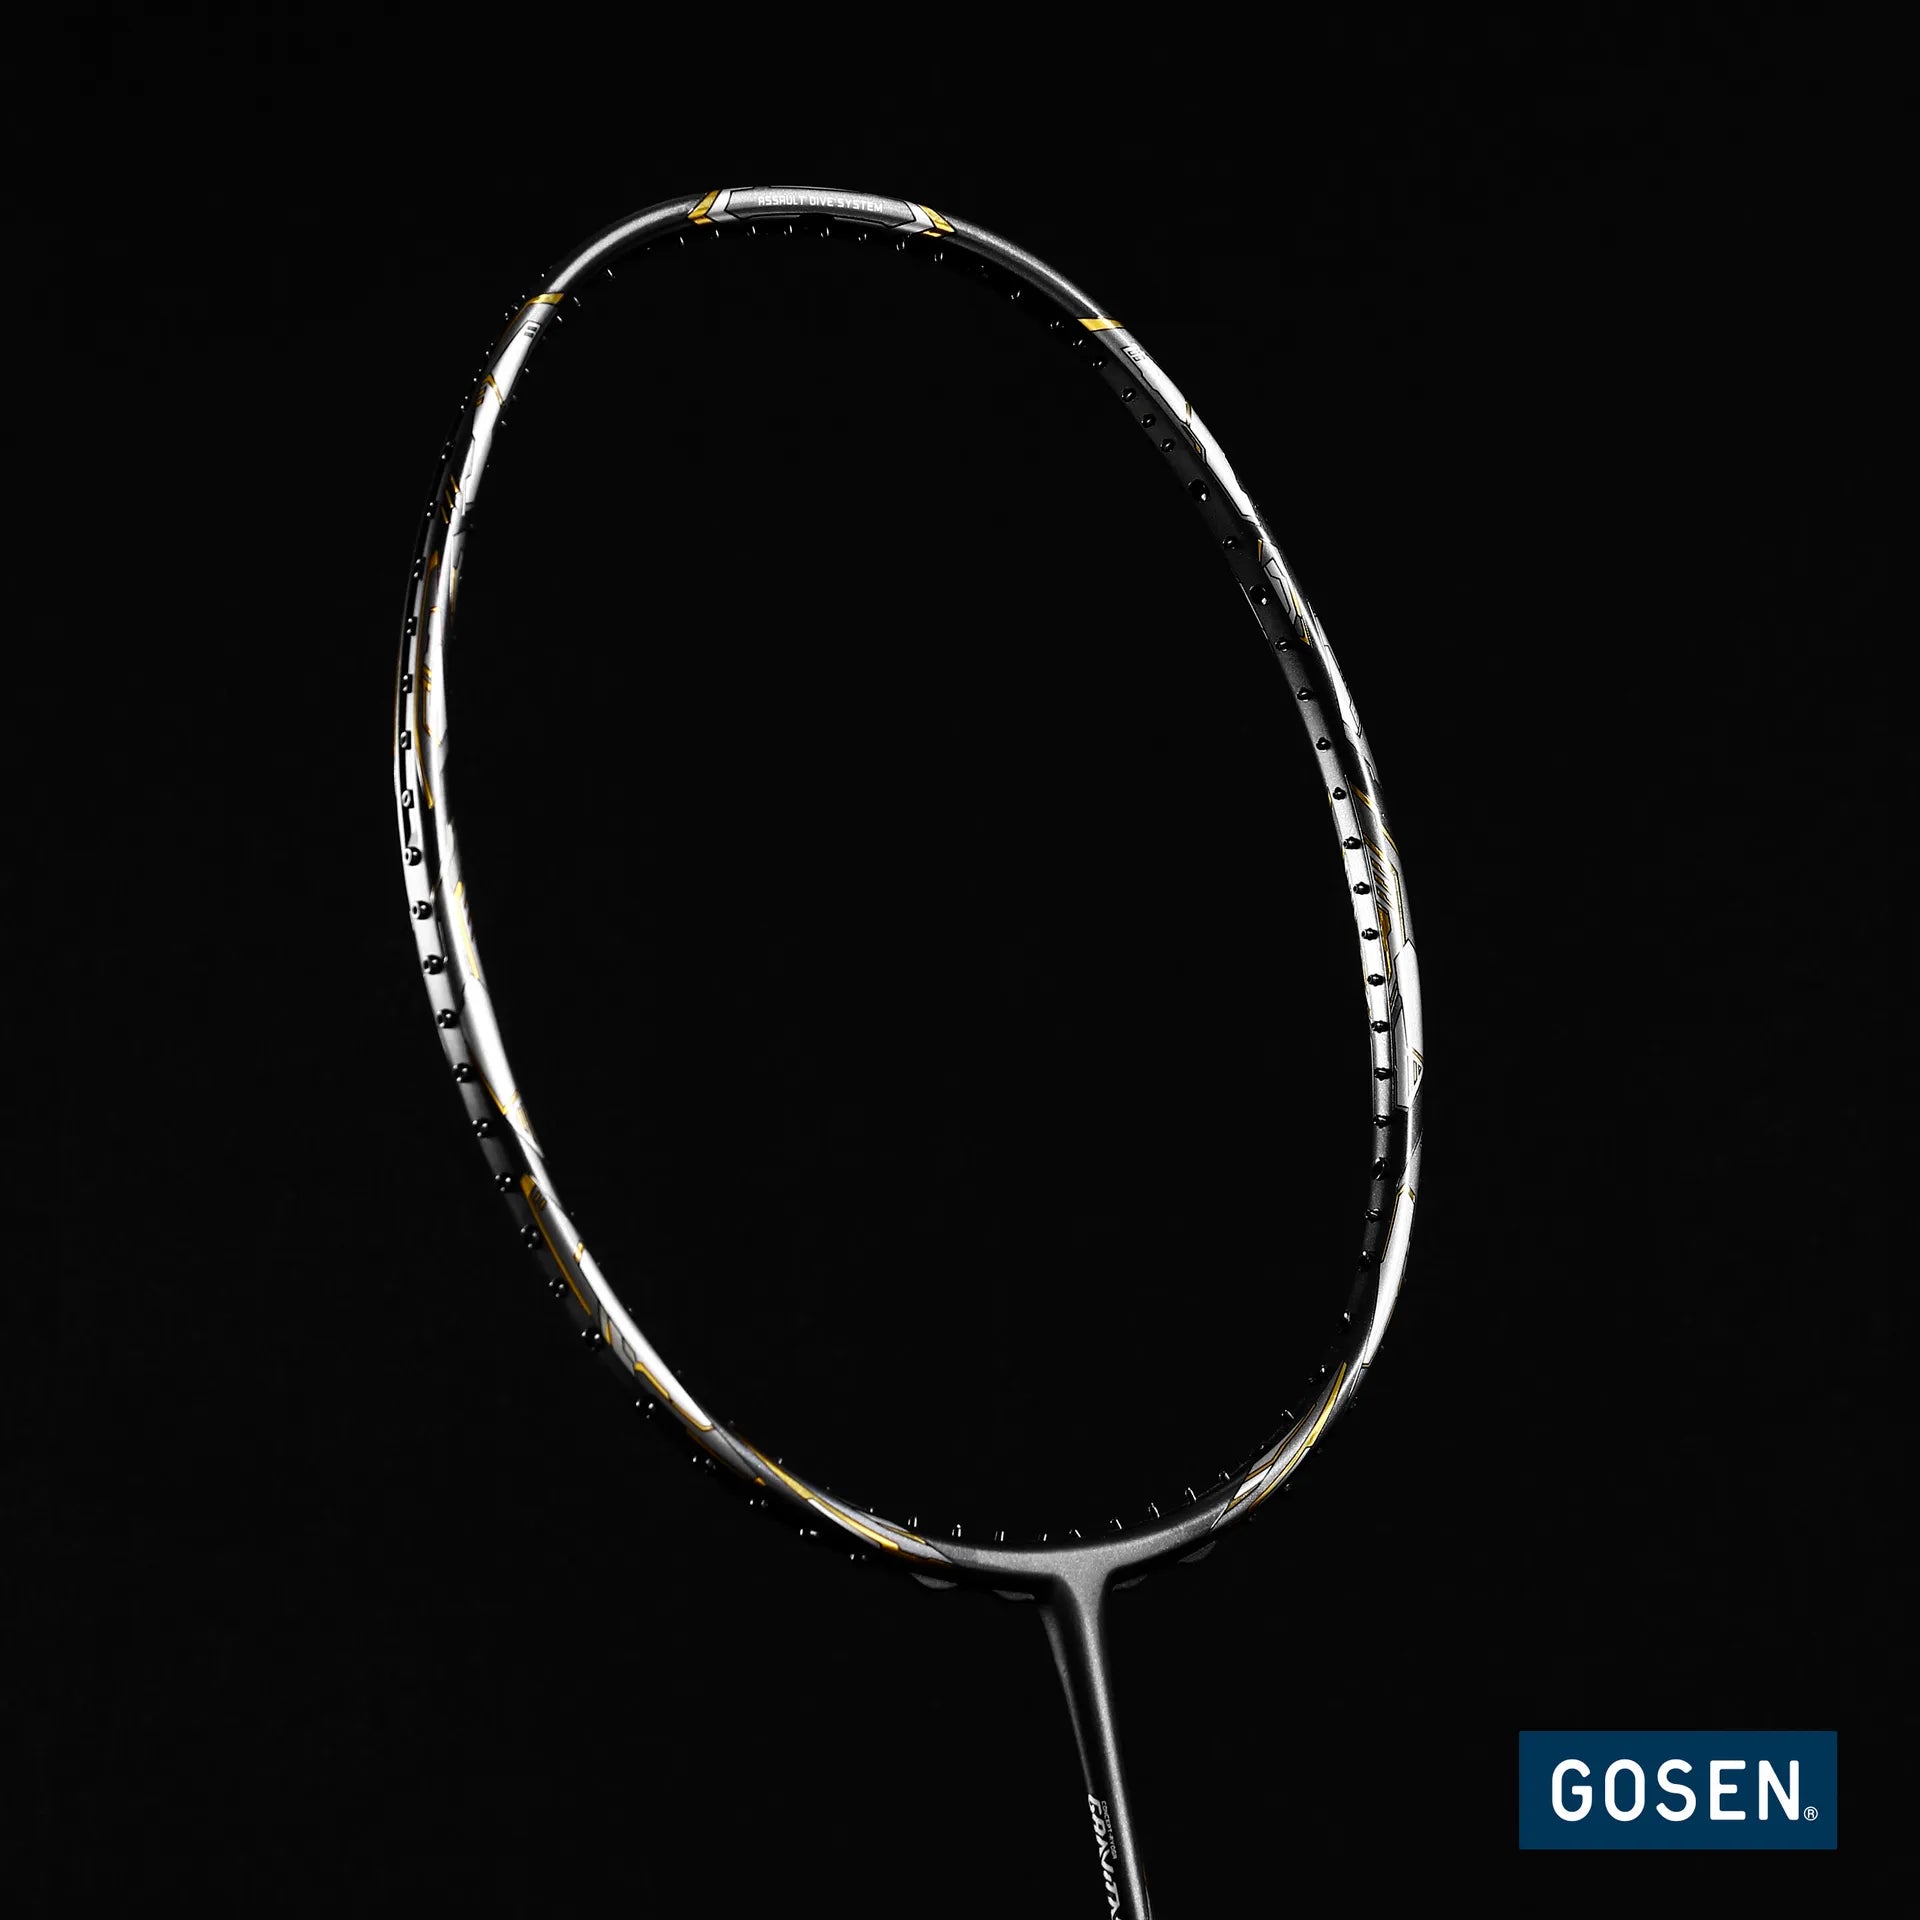 Gosen Gravitas 8.0SX Badminton racket